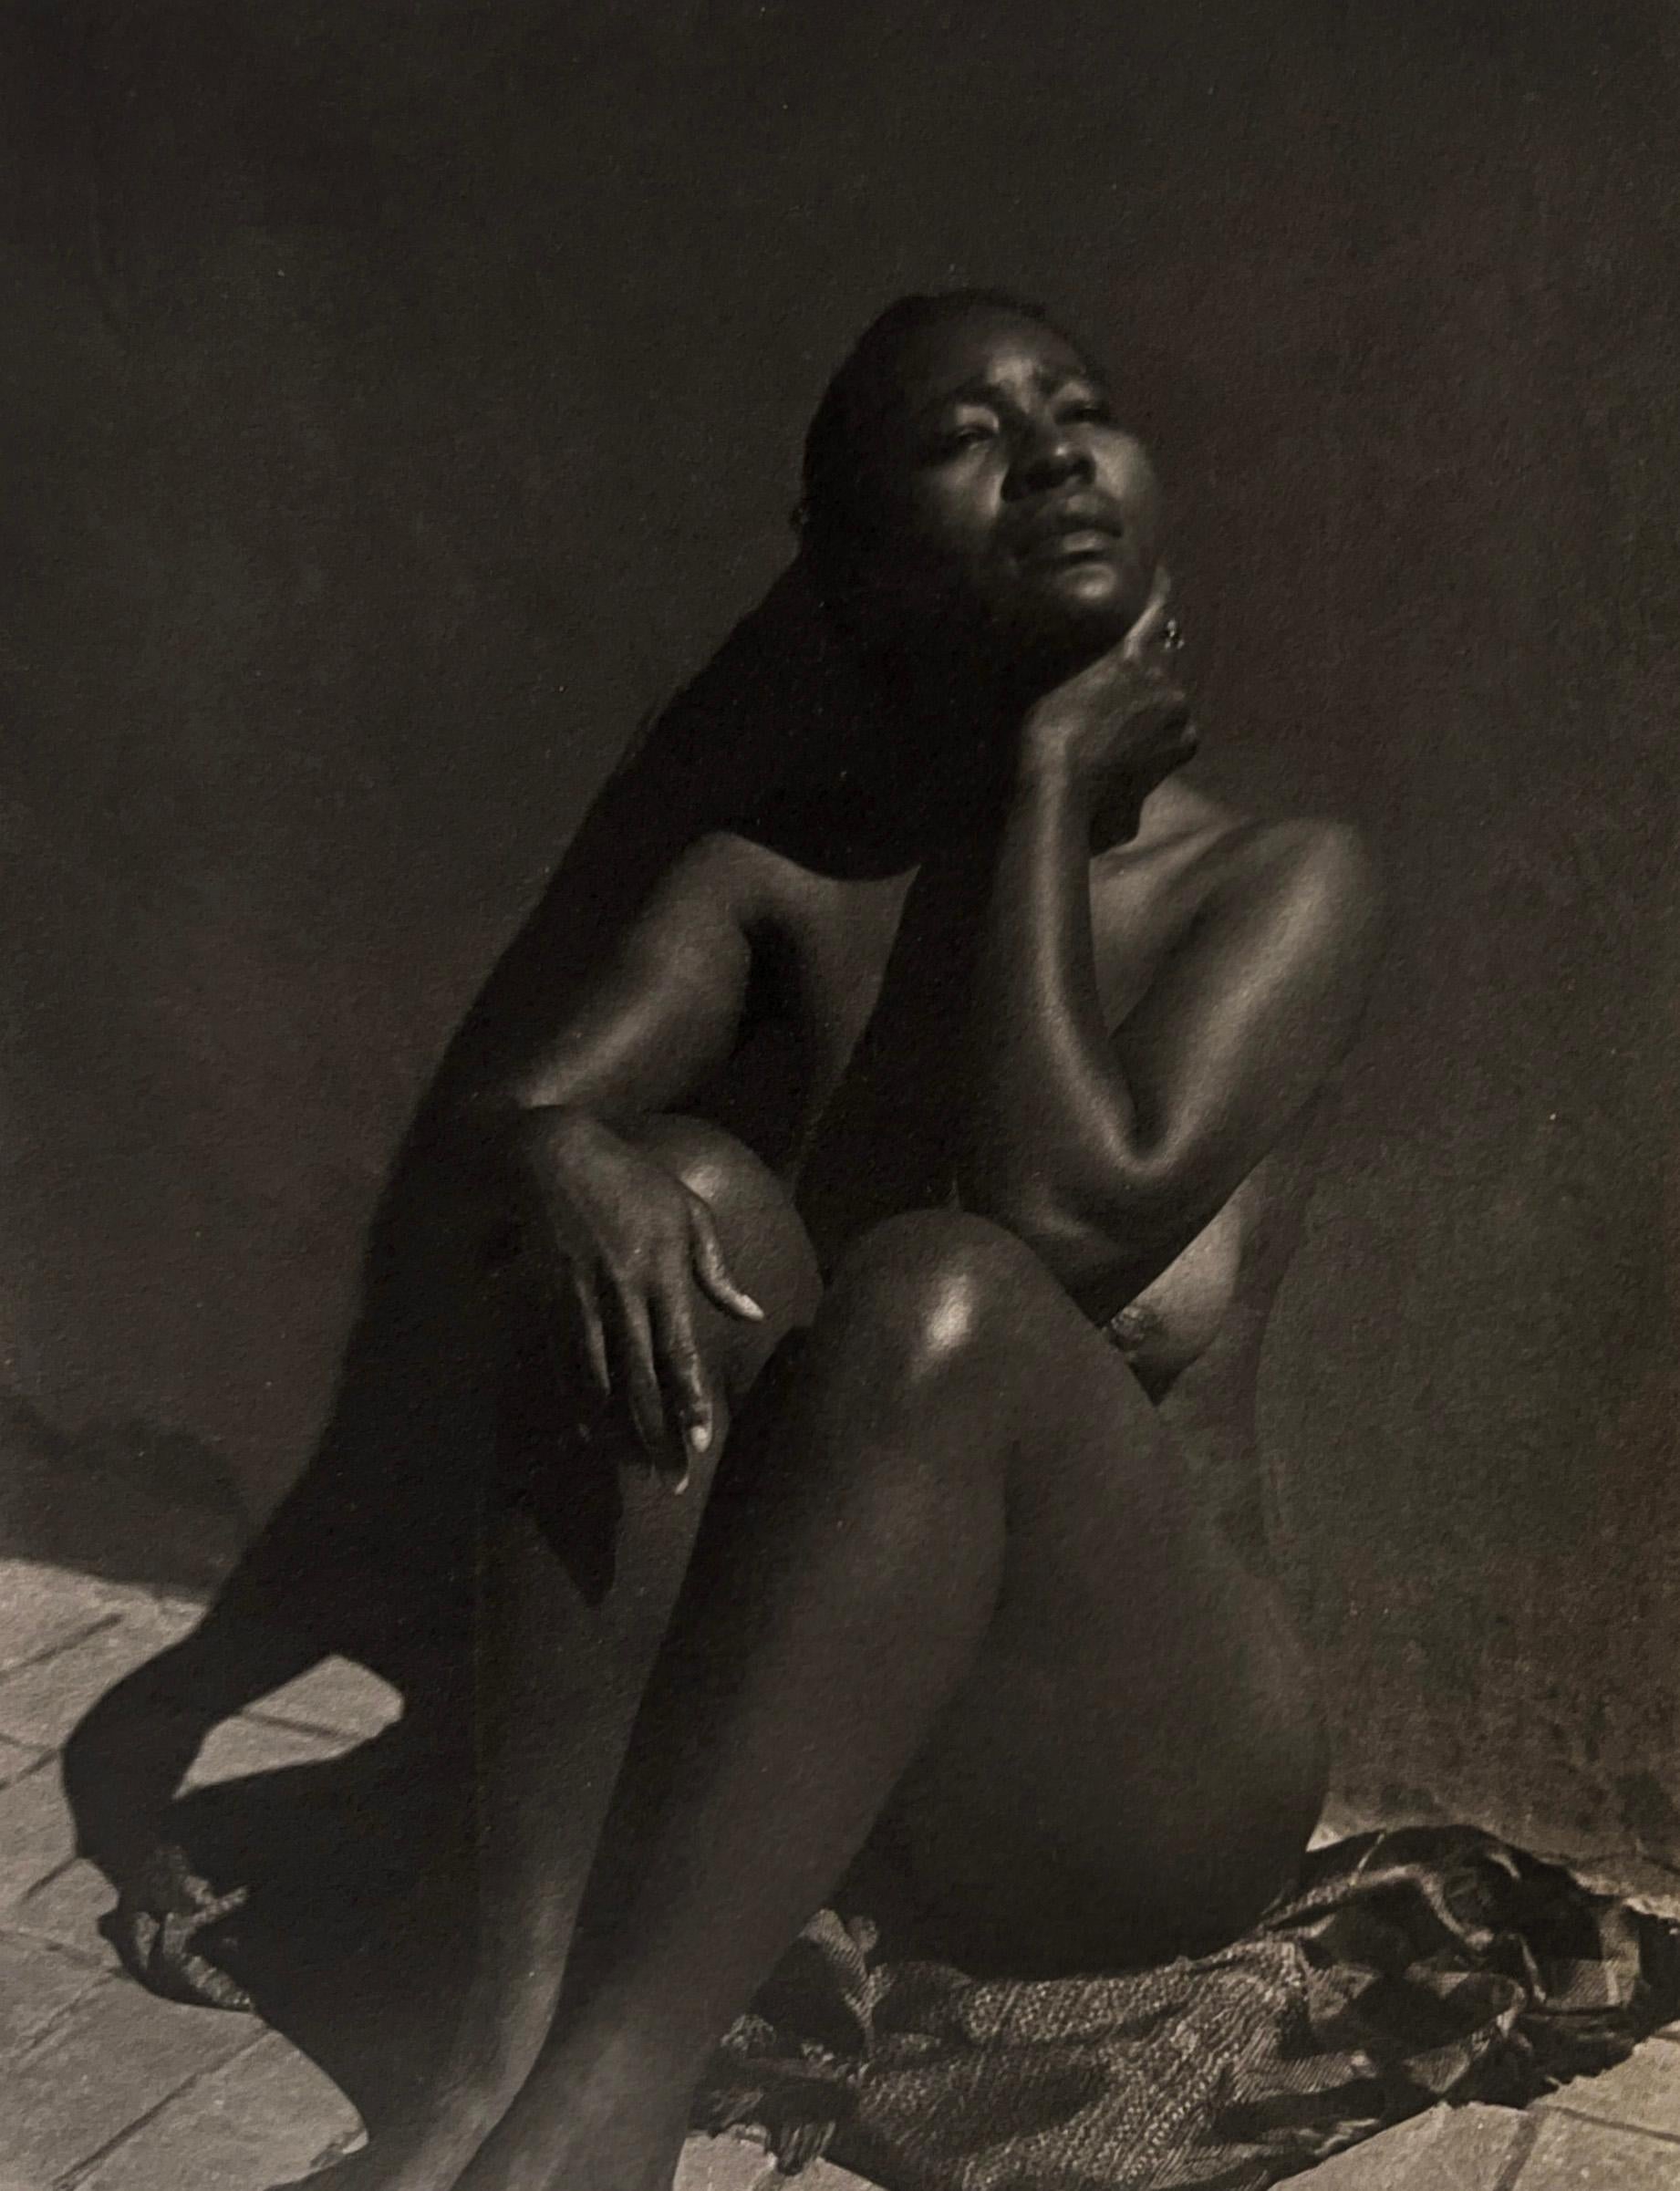 Manuel Alvarez Bravo Nude Photograph - Espejo Negro (Black Mirror)